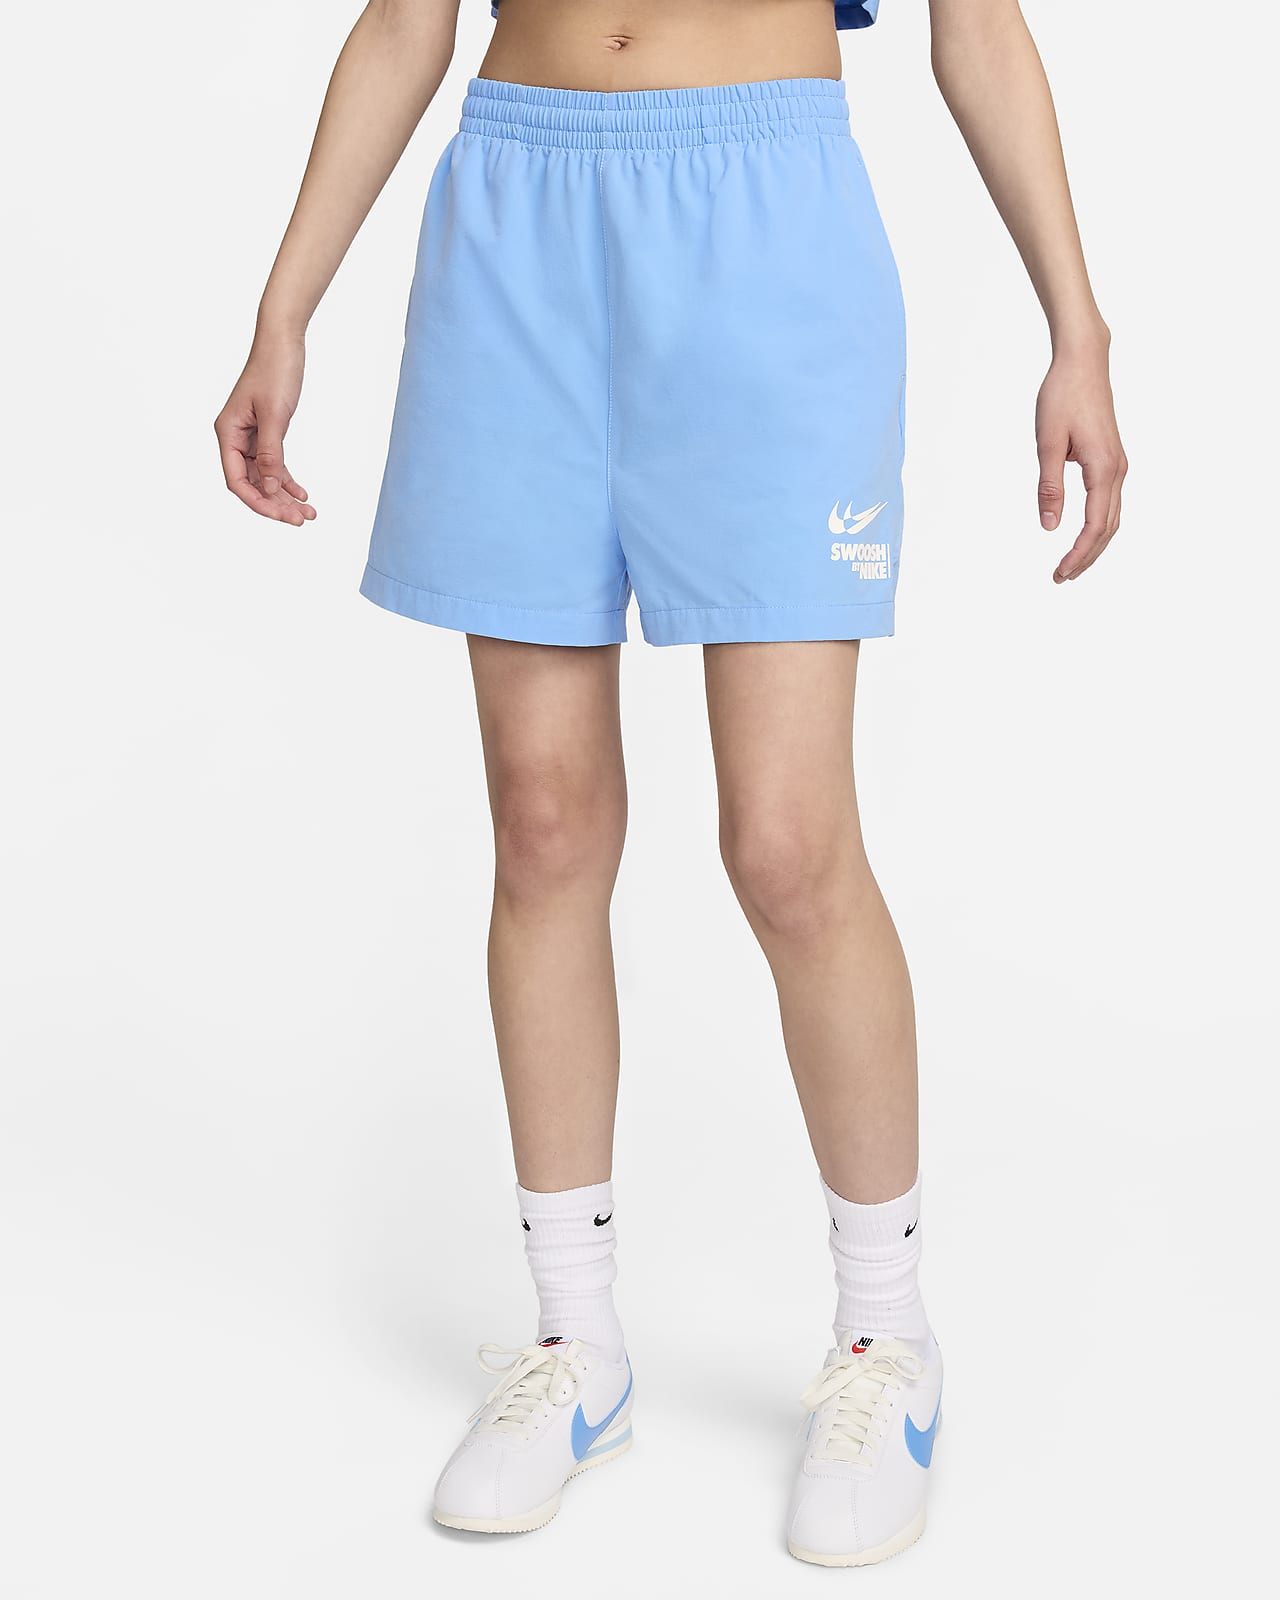 Nike Sportswear Women's Woven Shorts